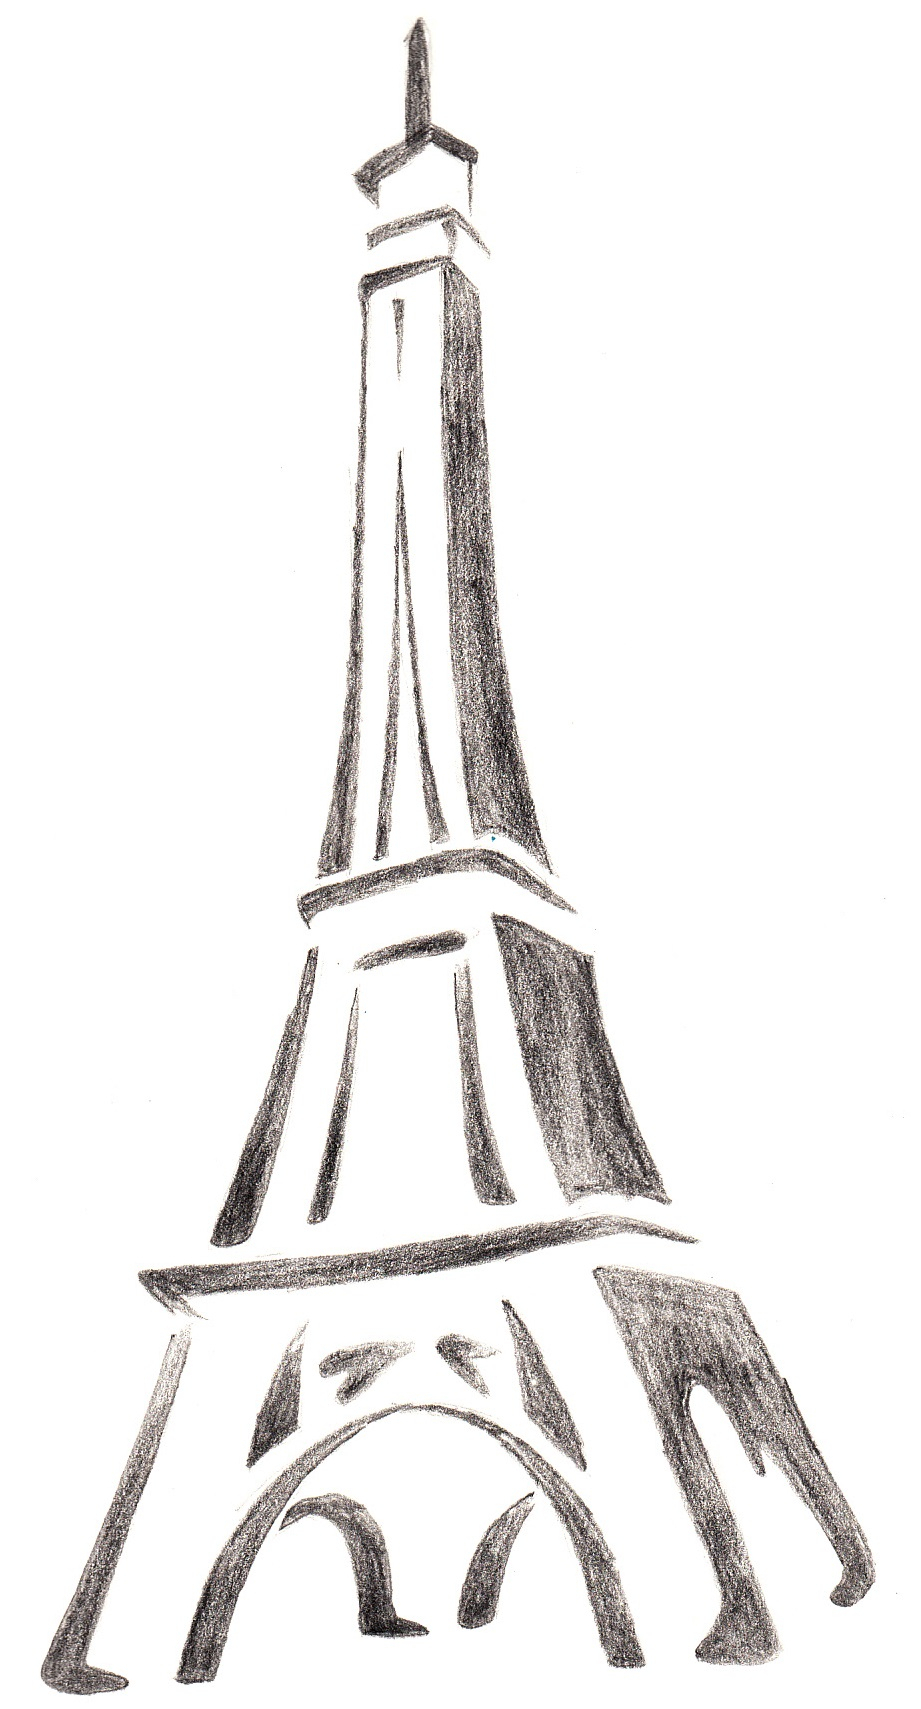 Рисунок Эйфелевой башни карандашом